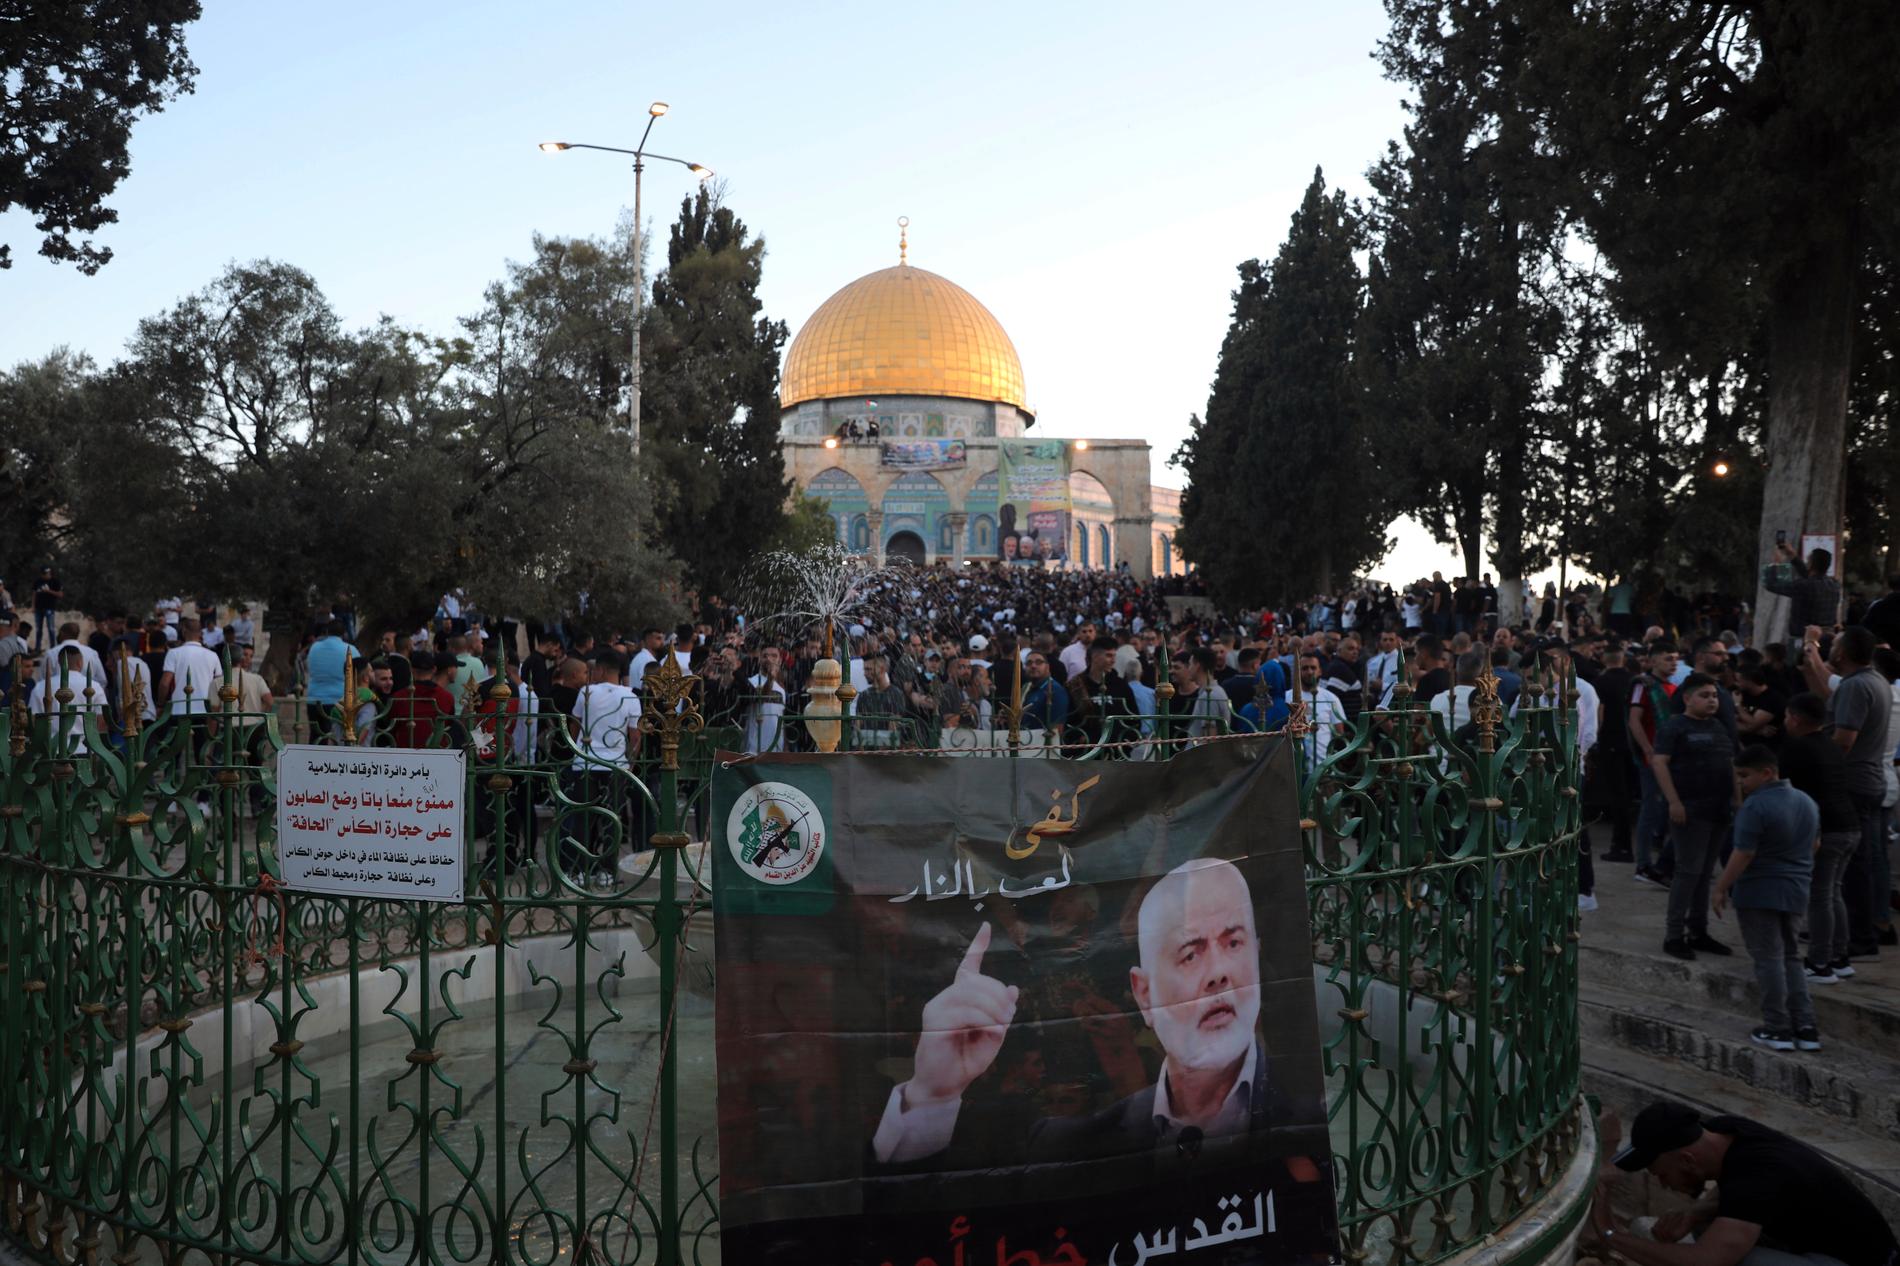 Samtidigt som konflikten rasar firar nu muslimerna storhelgen id al-fitr. Här syns en banderoll med Hamasledaren Ismail Haniya vid Klippmoskén i Jerusalem.